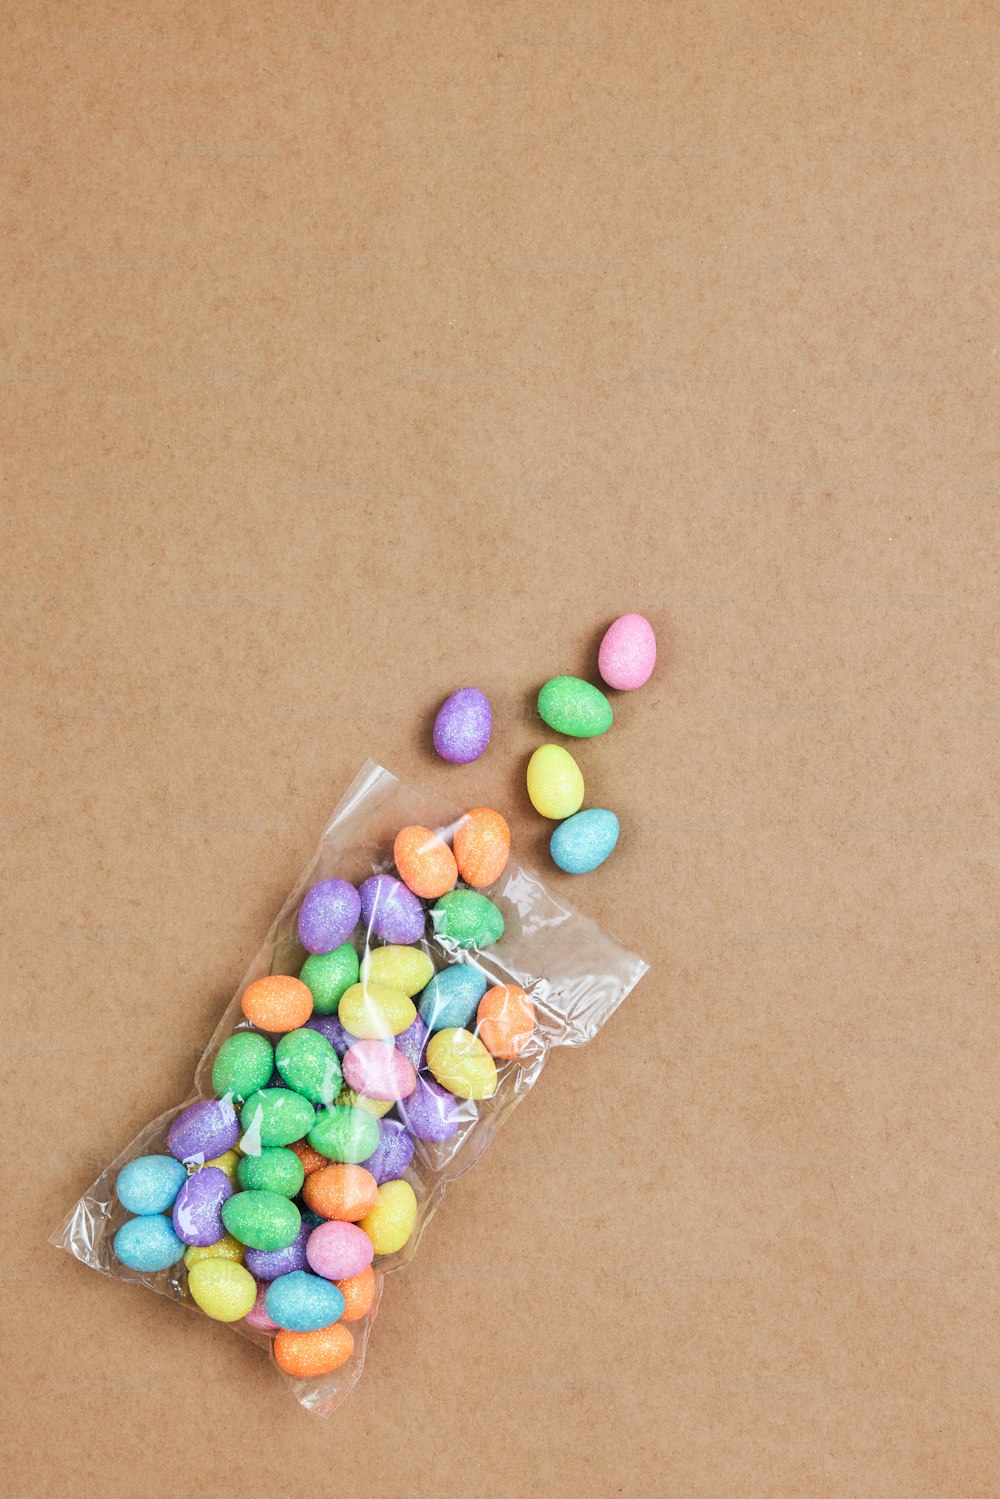 Una bolsa llena de dulces encima de una mesa